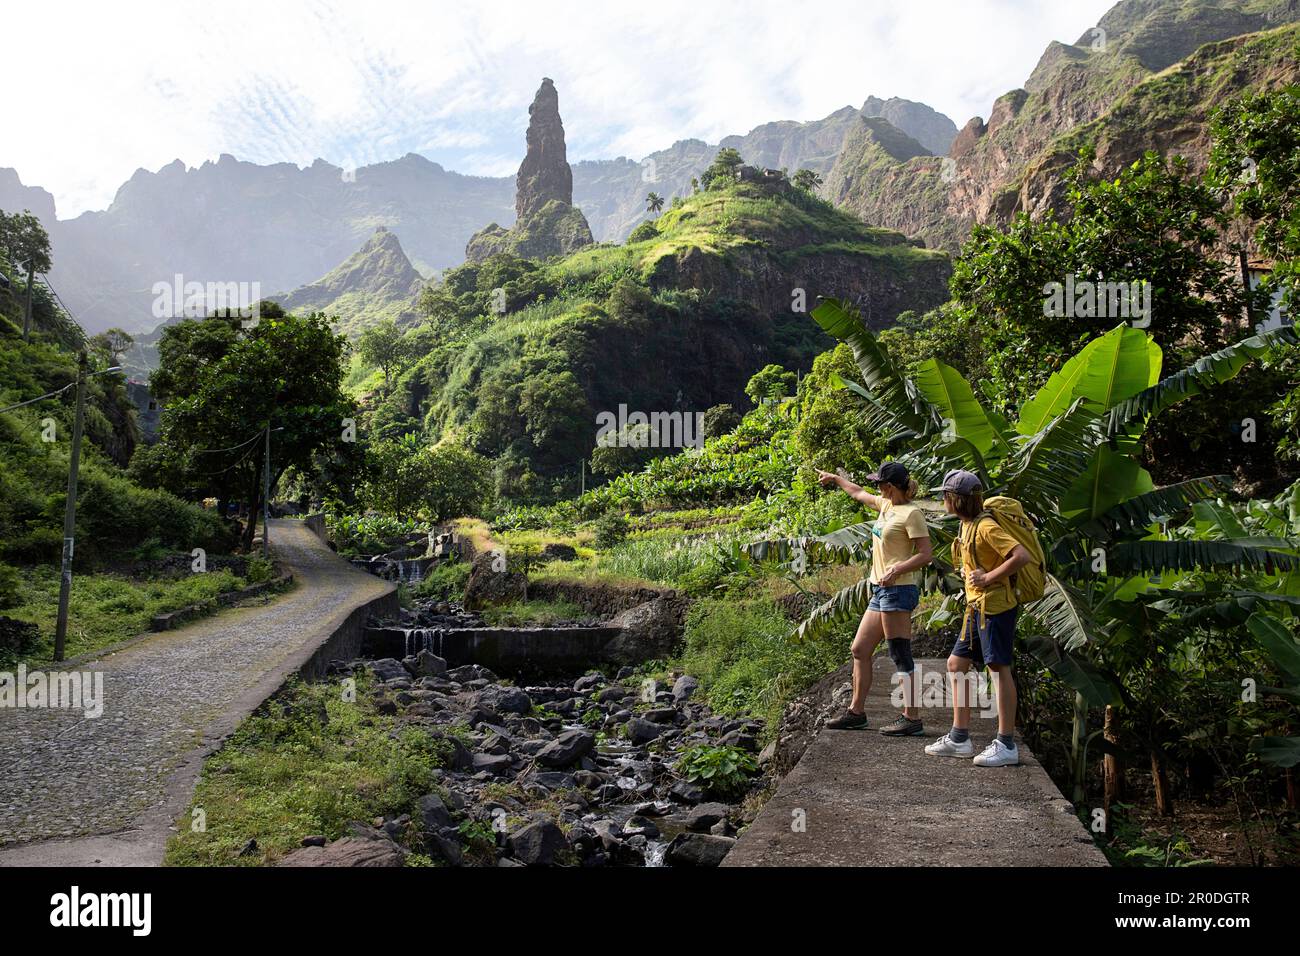 Madre e figlio, turisti che guardano il bellissimo villaggio xoxo sotto la colonna di roccia nel verde, lussureggiante ribeira grande valle, santo antao, cabo verde Foto Stock